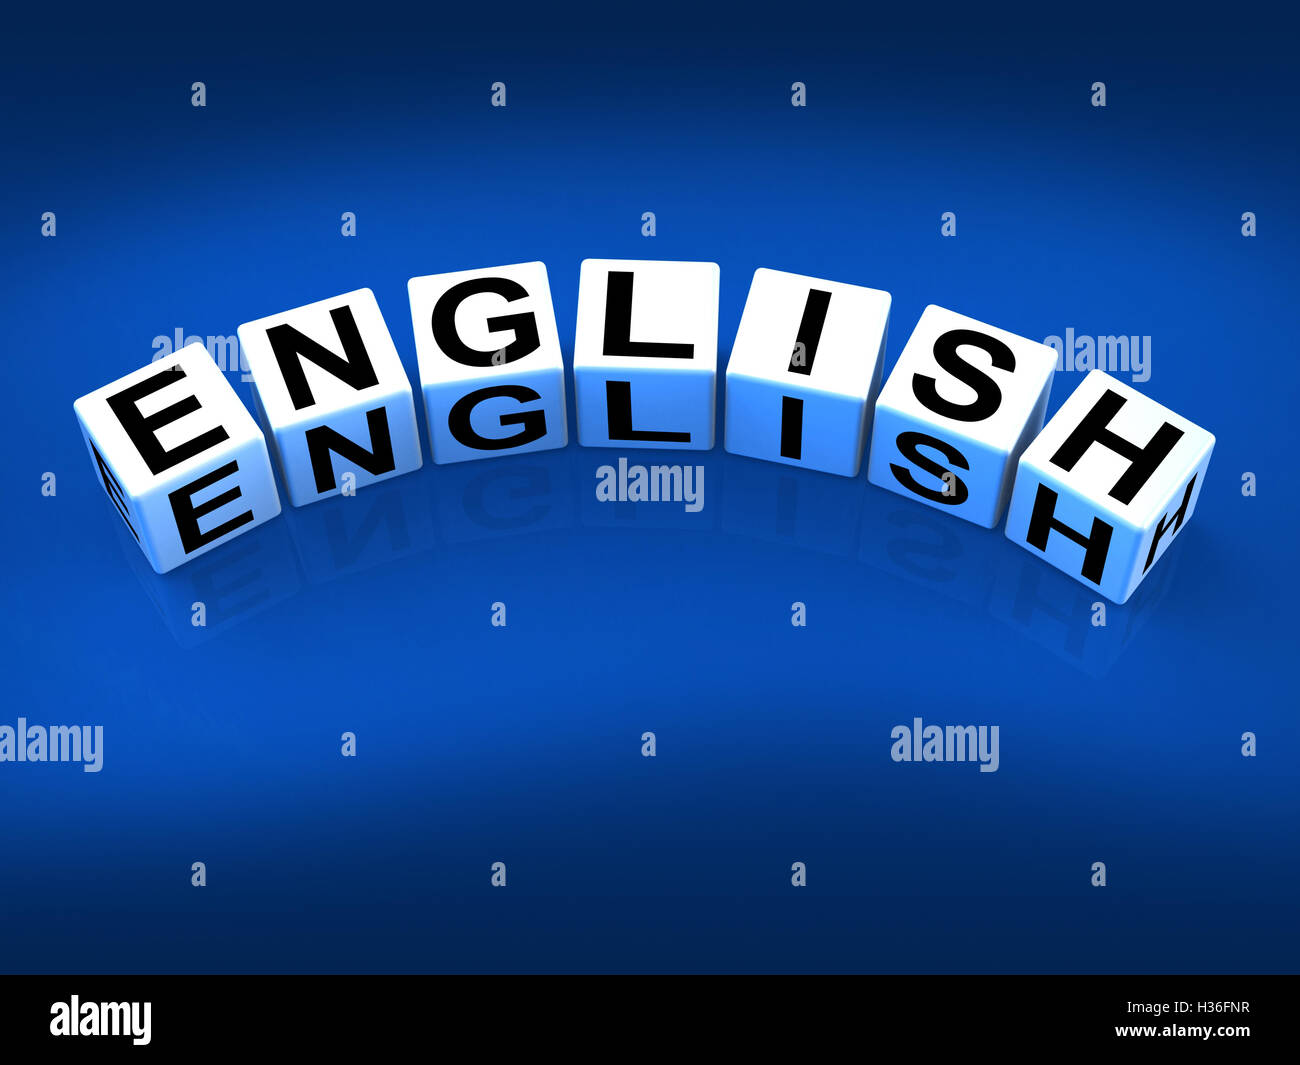 Consulte Bloques de inglés hablado y escrito Vocabulario de Eng Foto de stock